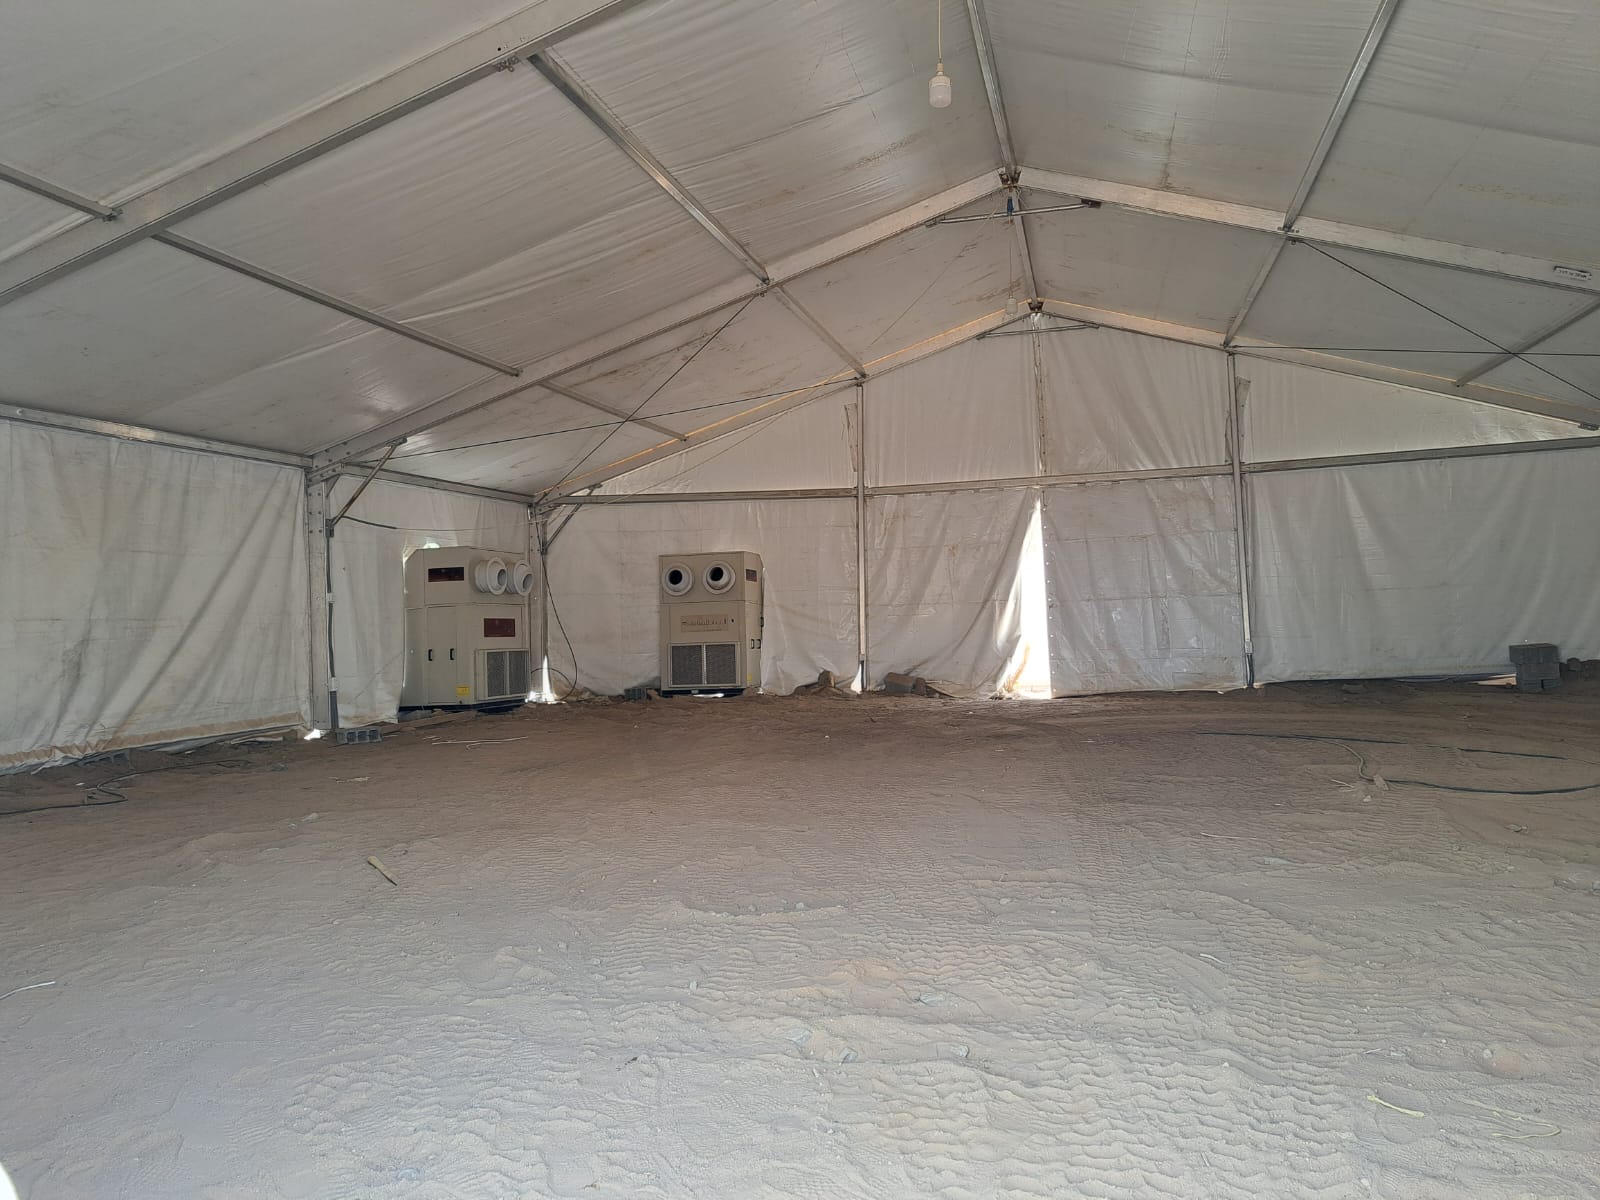 Tenda di Arafah